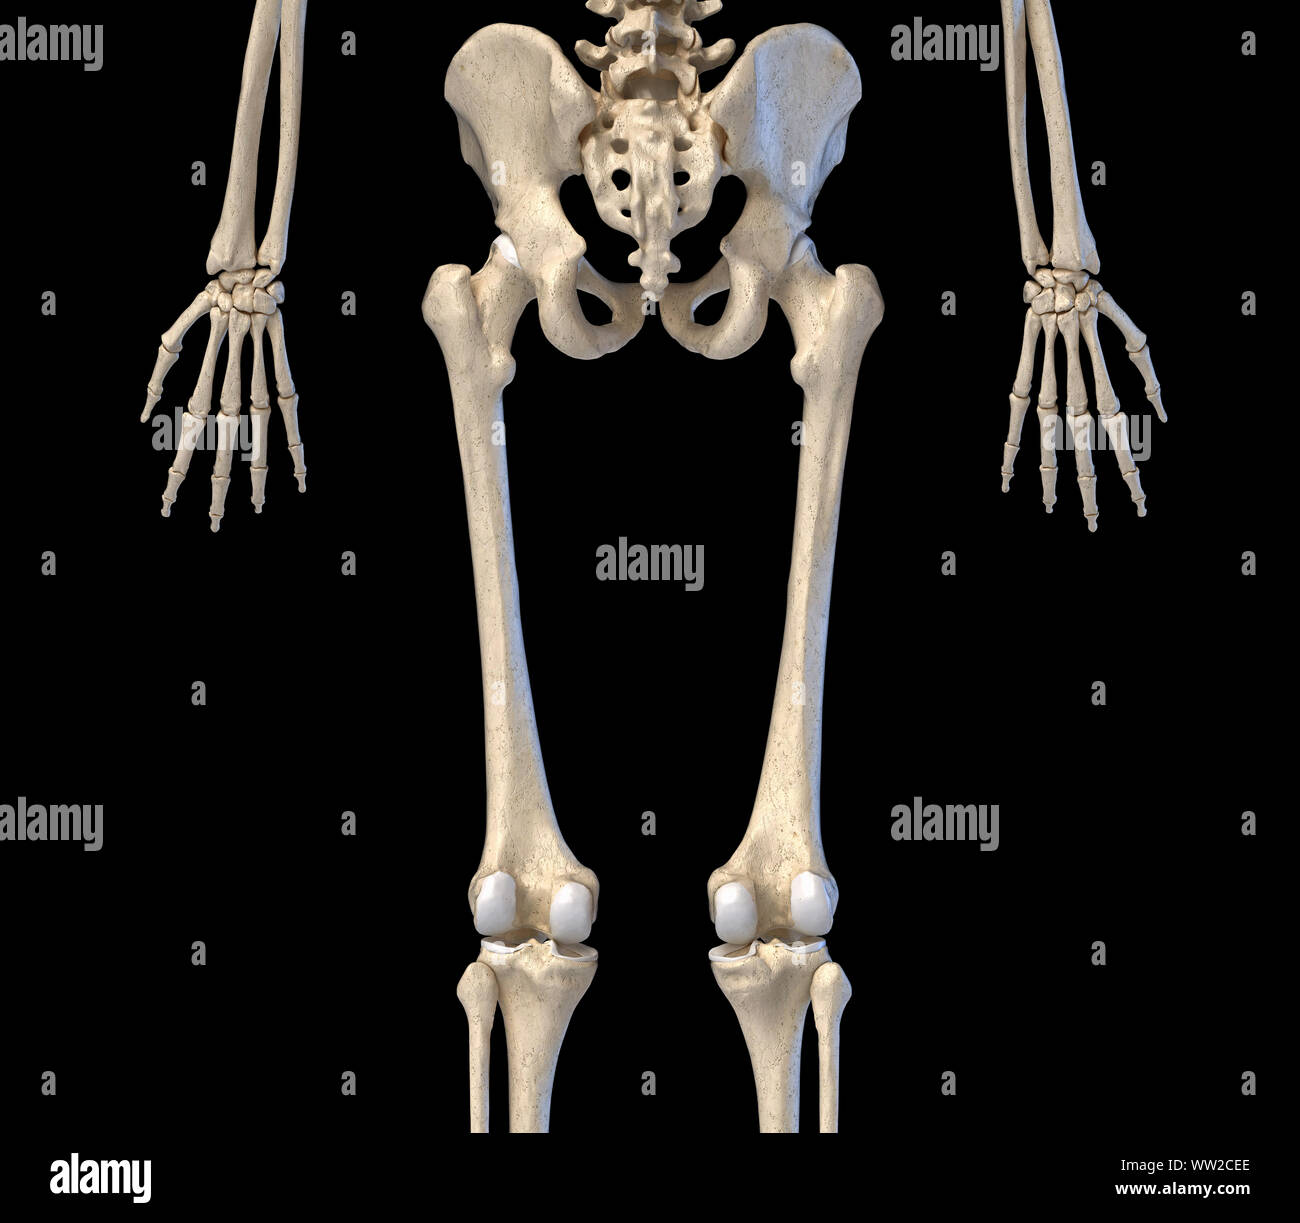 L'anatomie humaine, de la hanche, des membres et des mains squelettiques. Vue arrière. Sur fond noir. 3d illustration. Banque D'Images